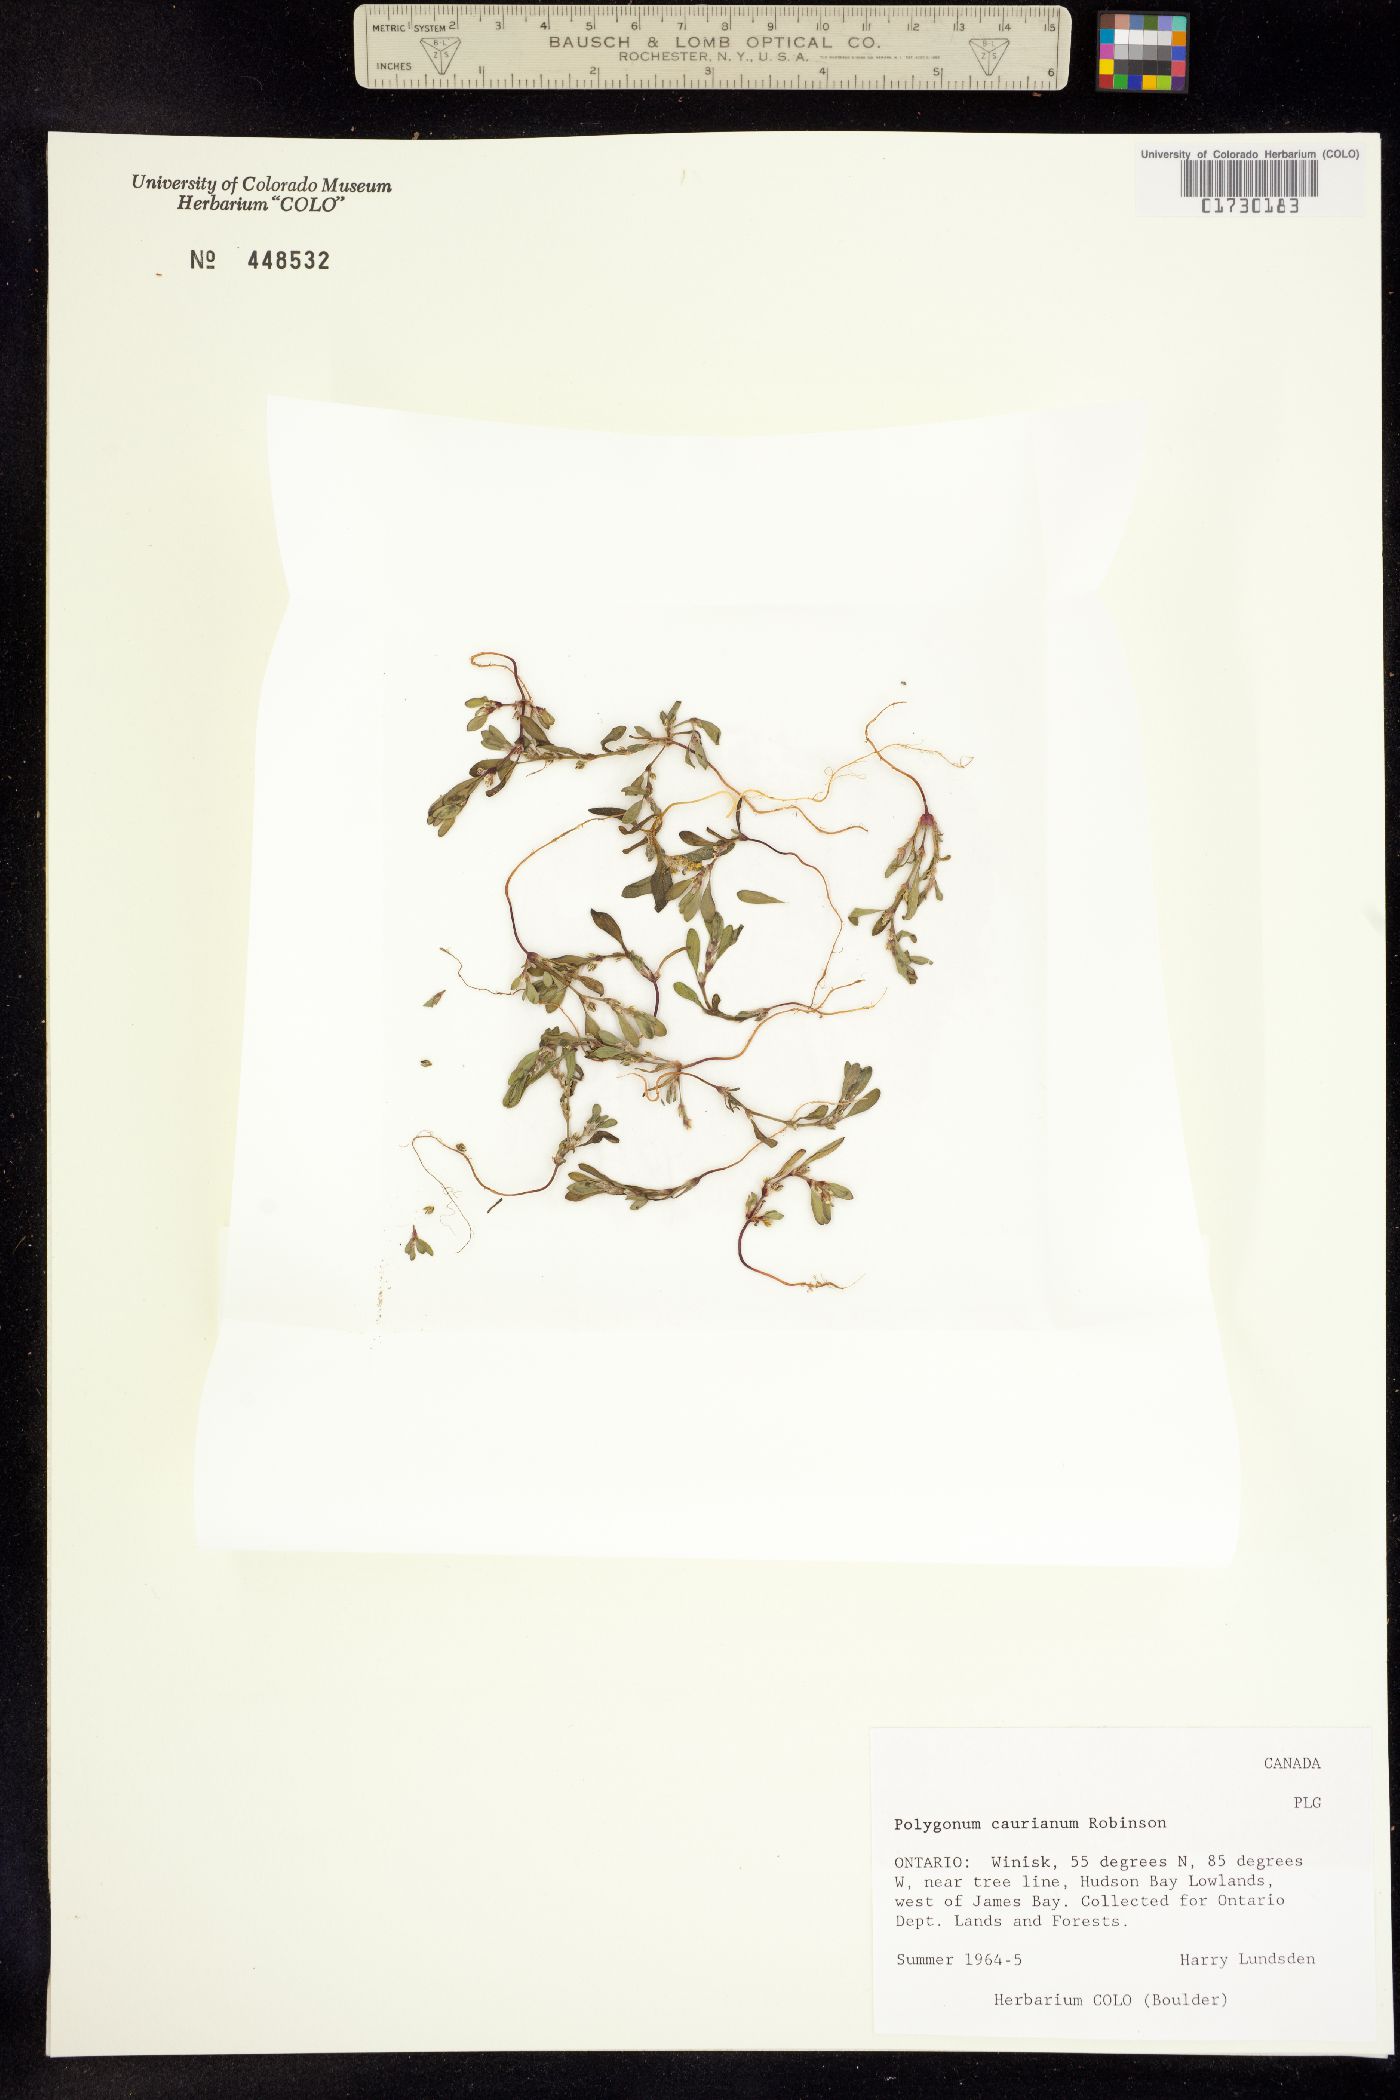 Polygonum humifusum ssp. caurianum image